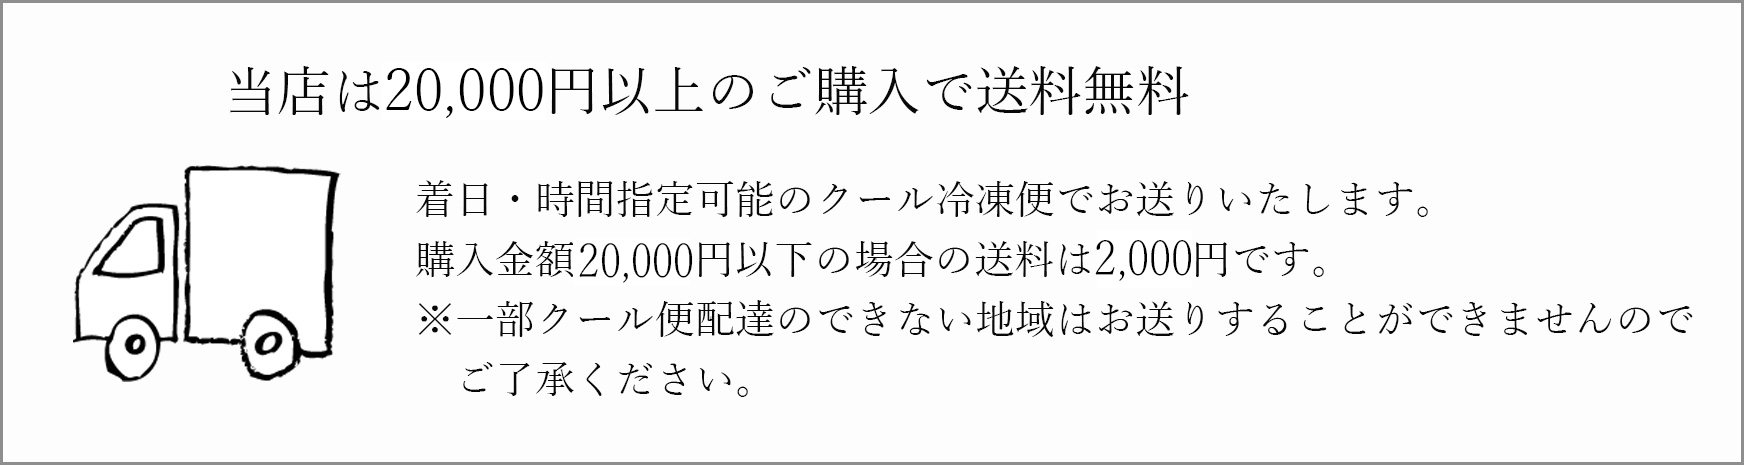 2万円以上のご購入で送料無料。2万円までのお買物は送料2000円です。